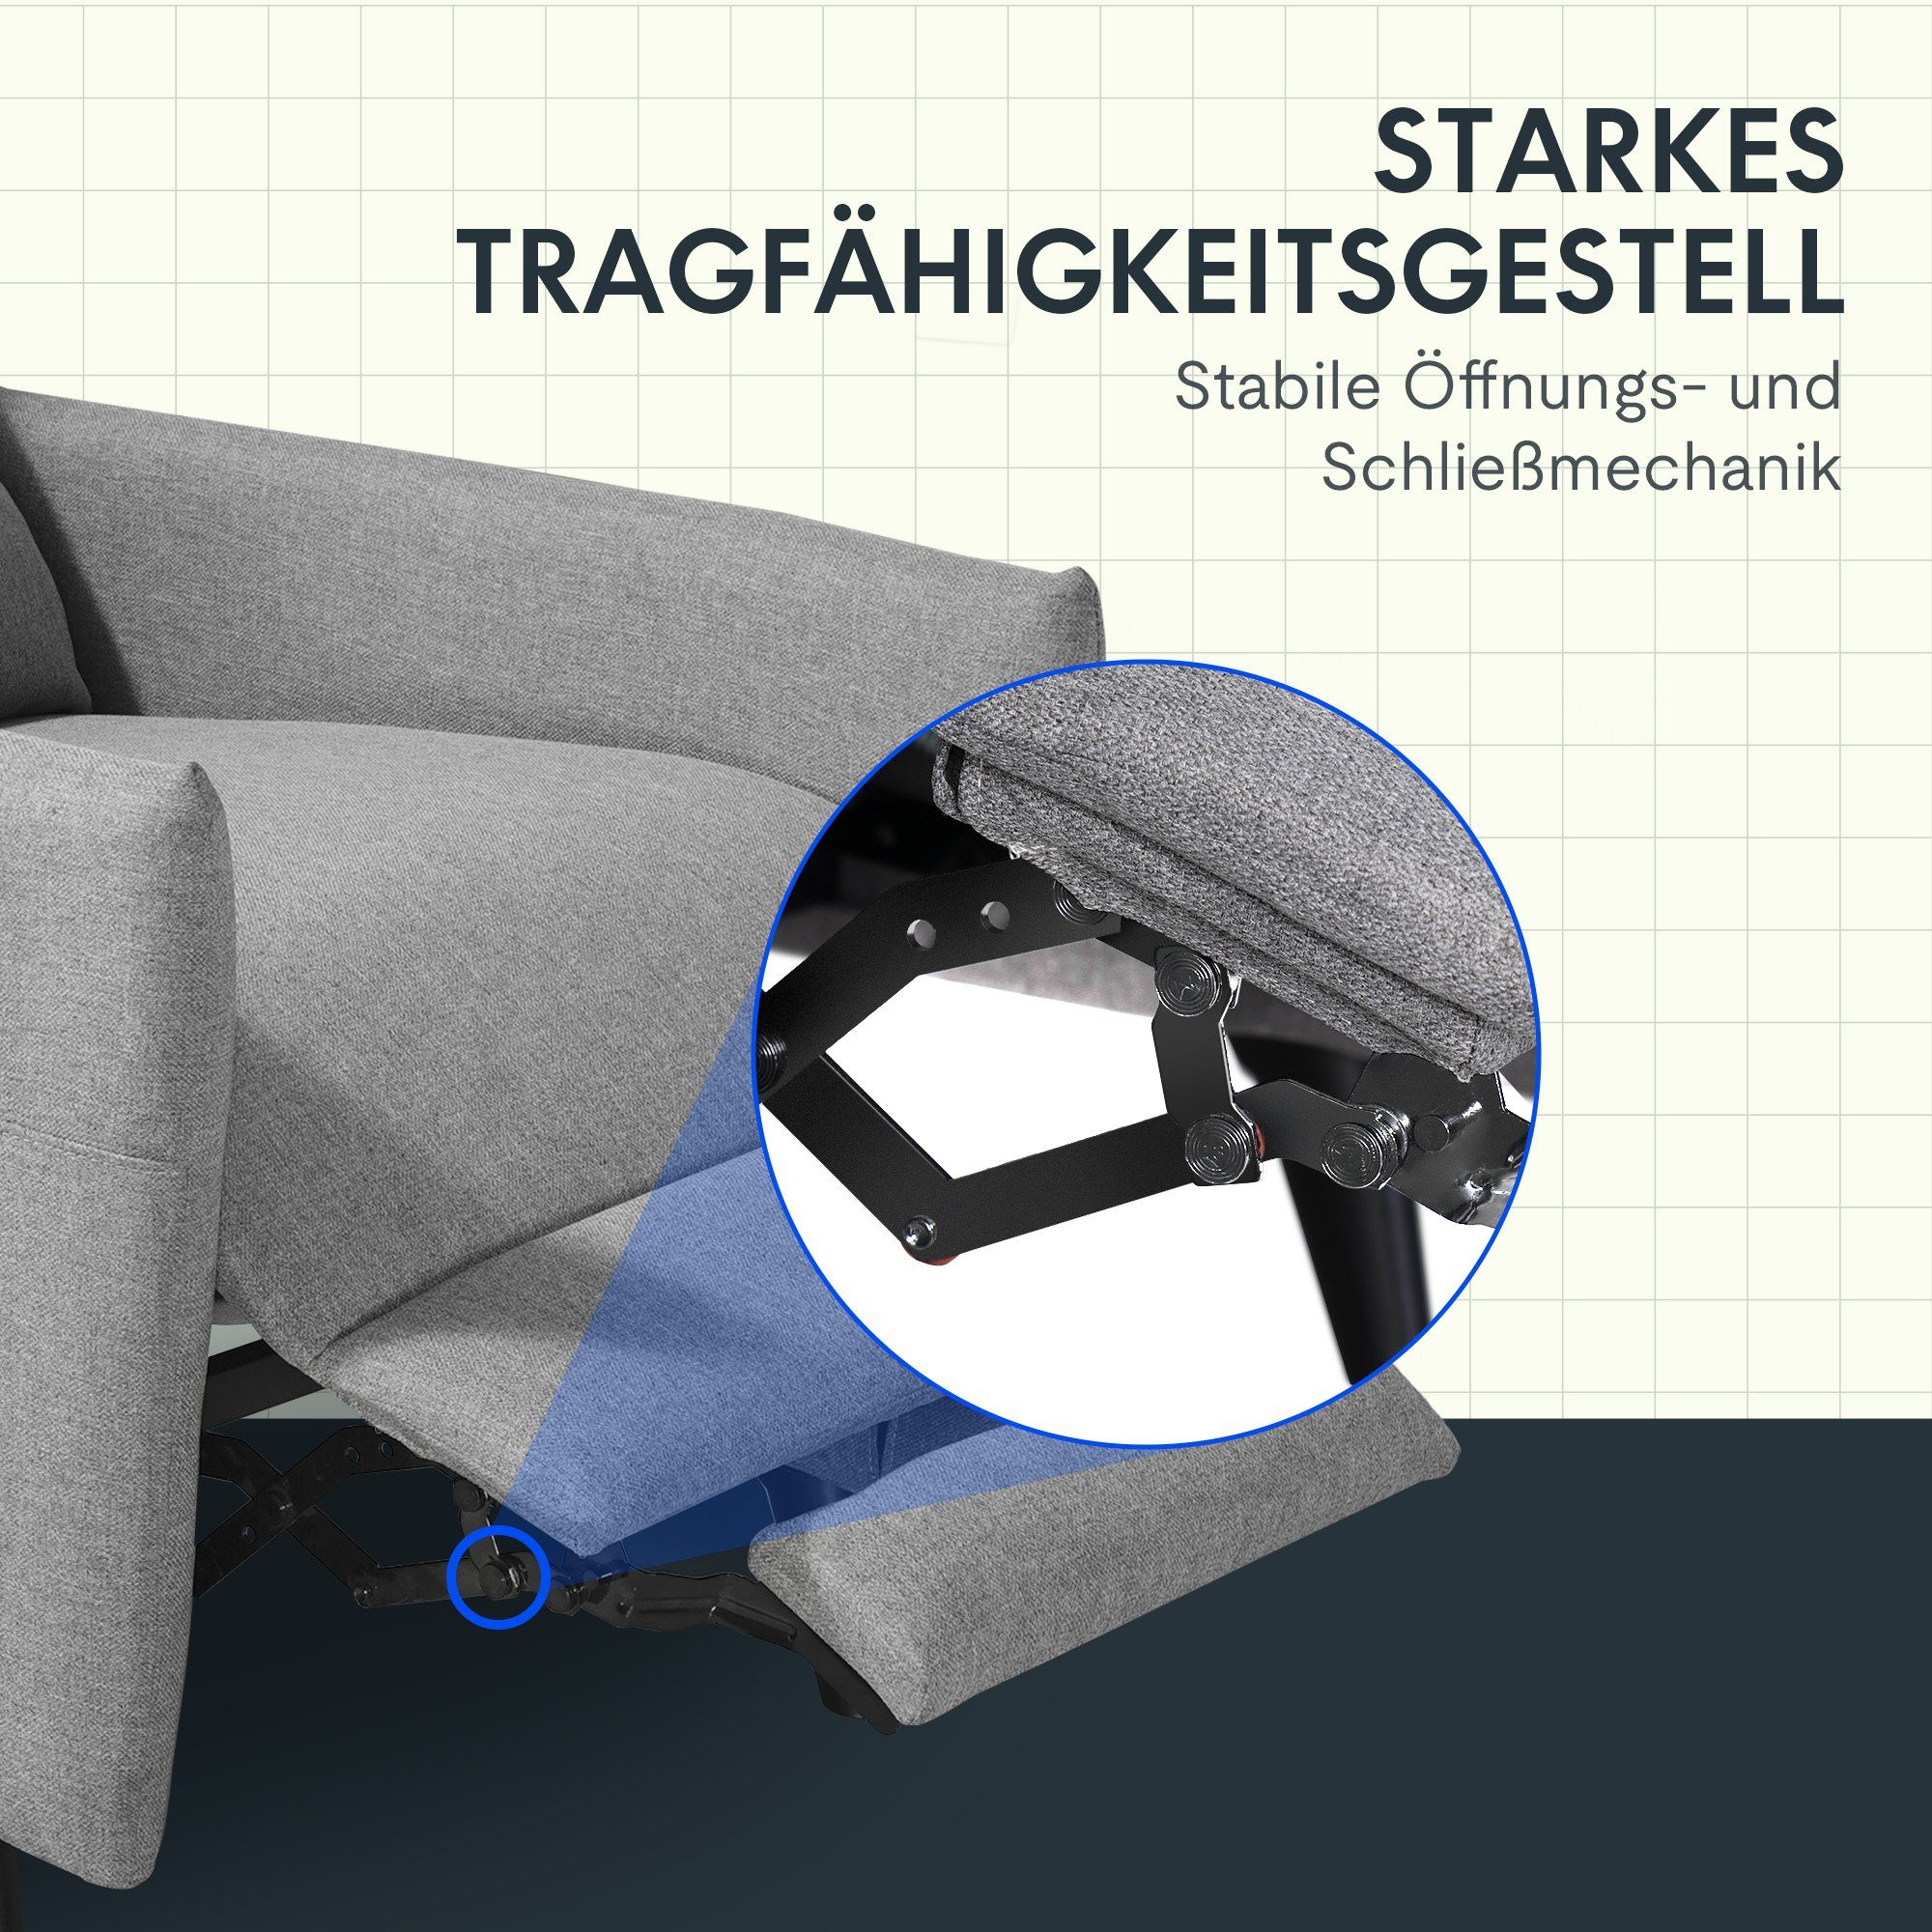 FLEXISPOT Sessel Stoff Perfektes 125°-165° (Weich Fernsehsessel für gepolsterte Komfort), Hellgrau XC1 Flexibel Rückenlehne, verstellbar Design